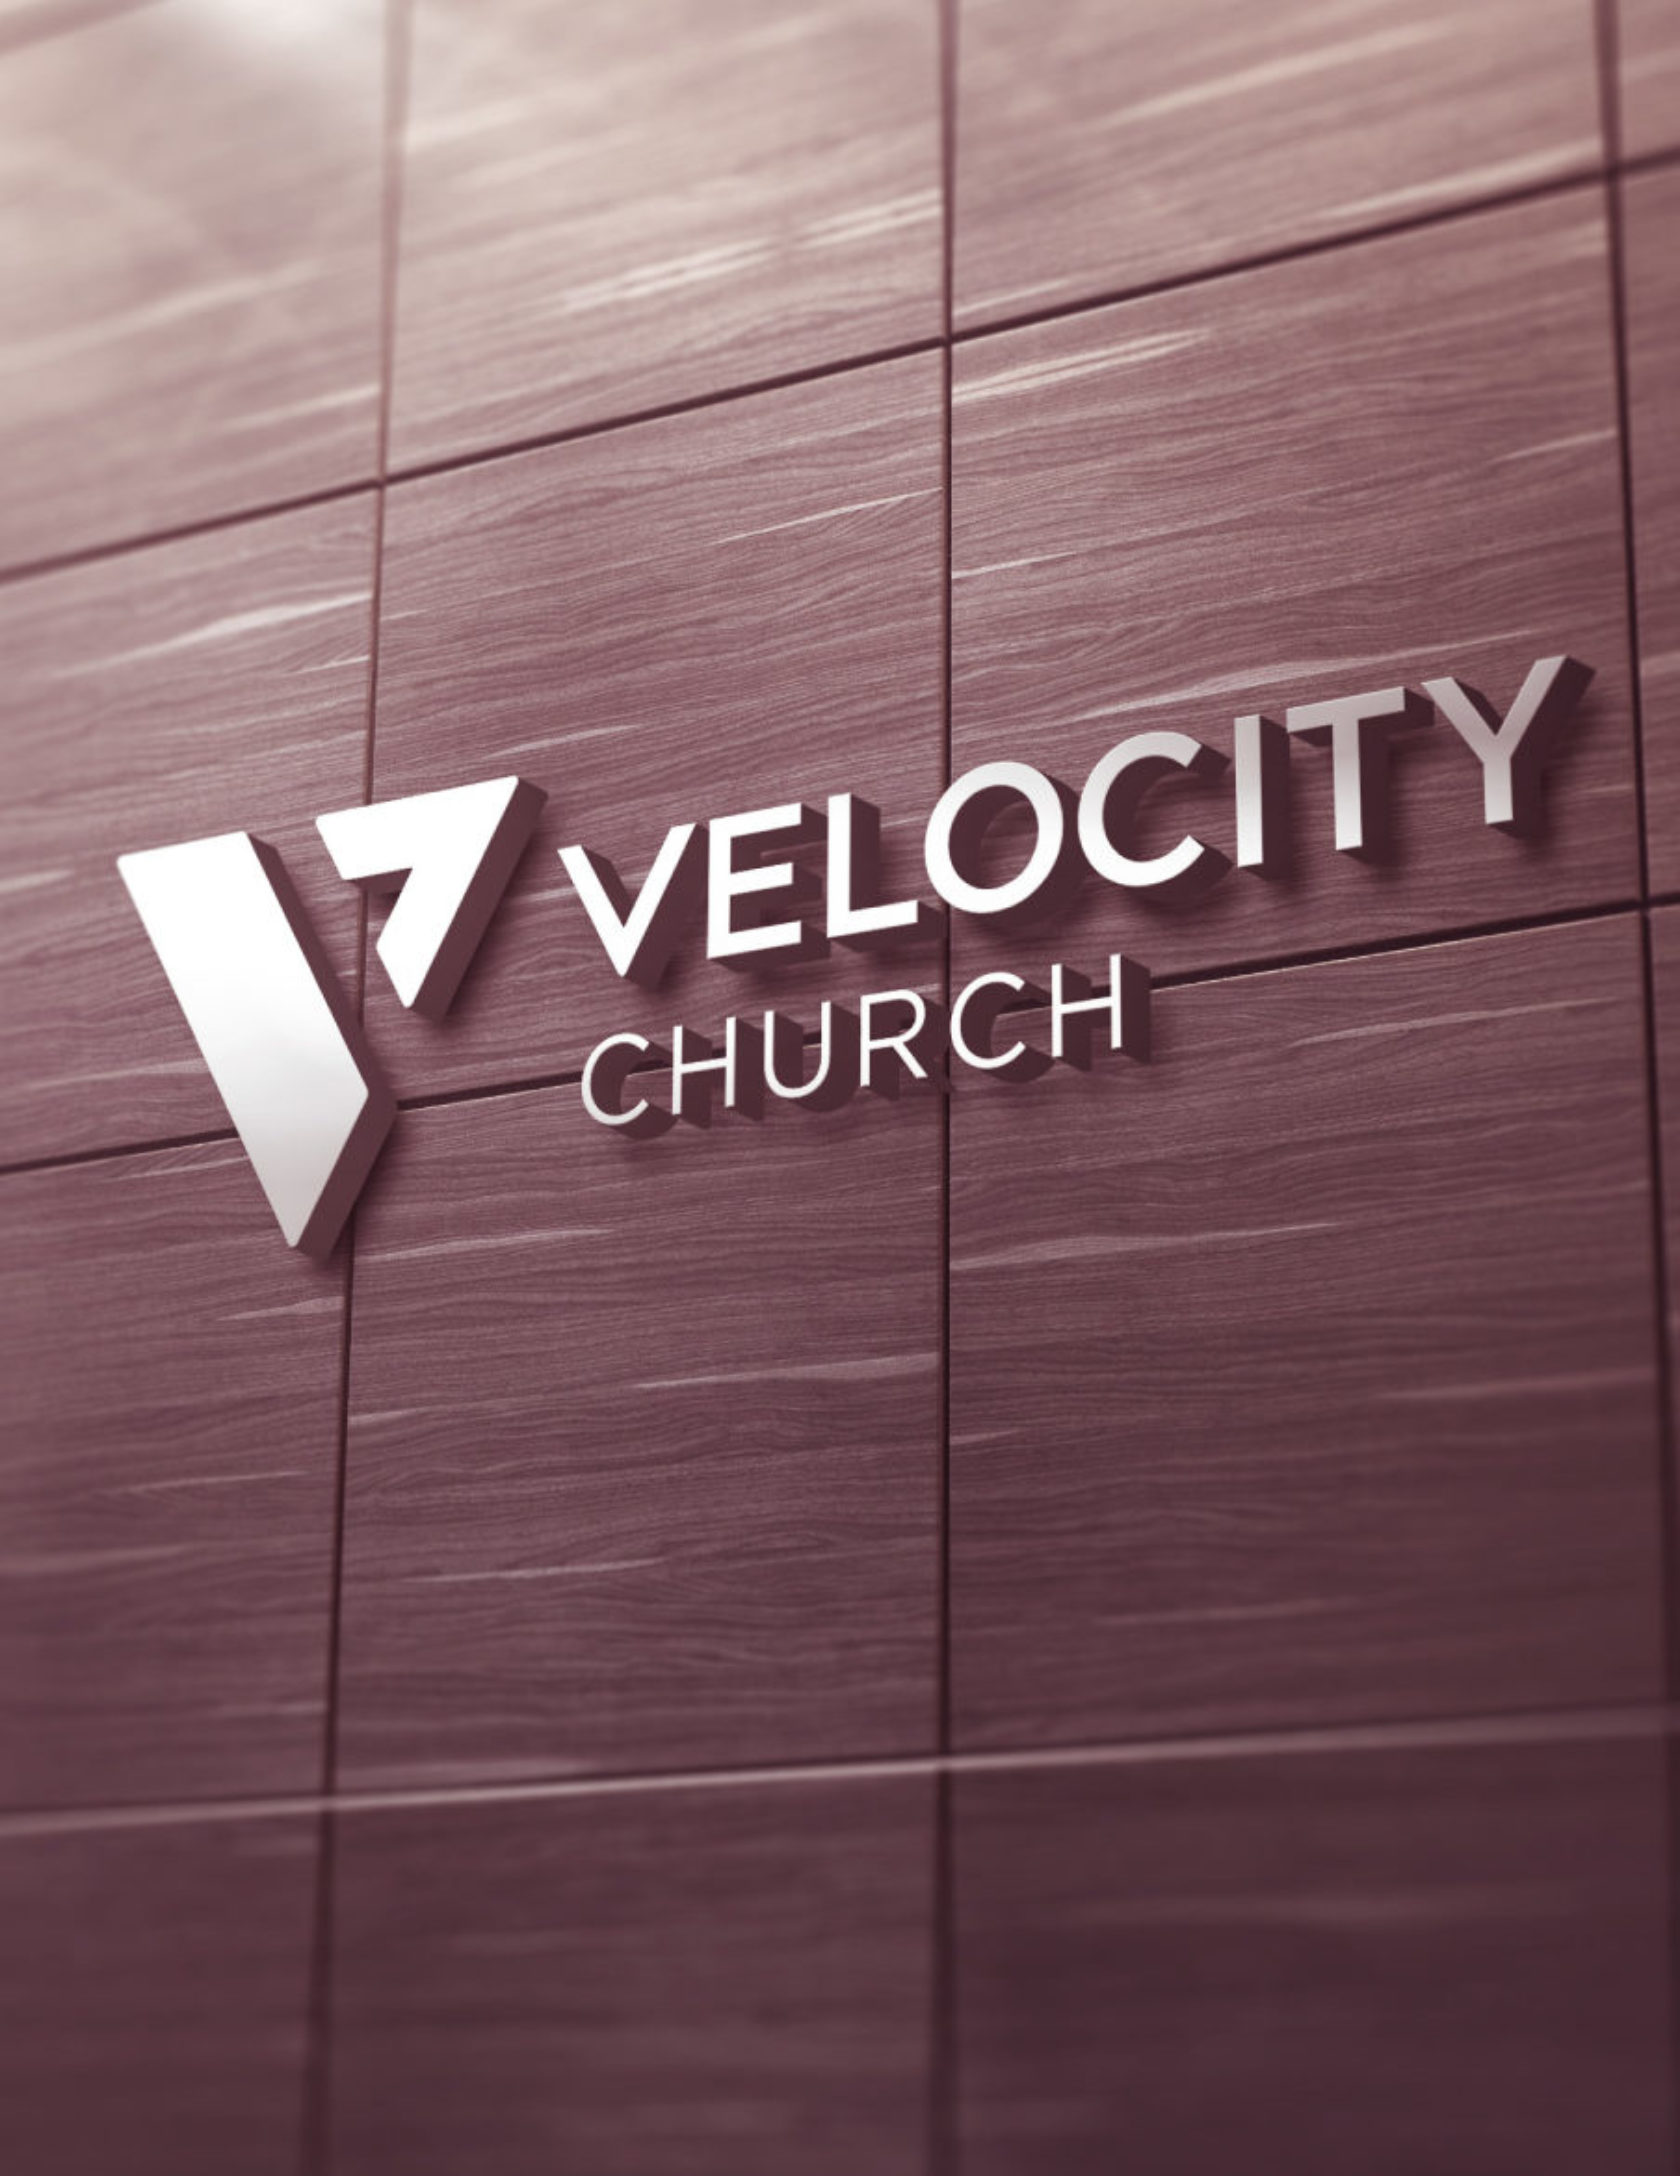 Velocity Church